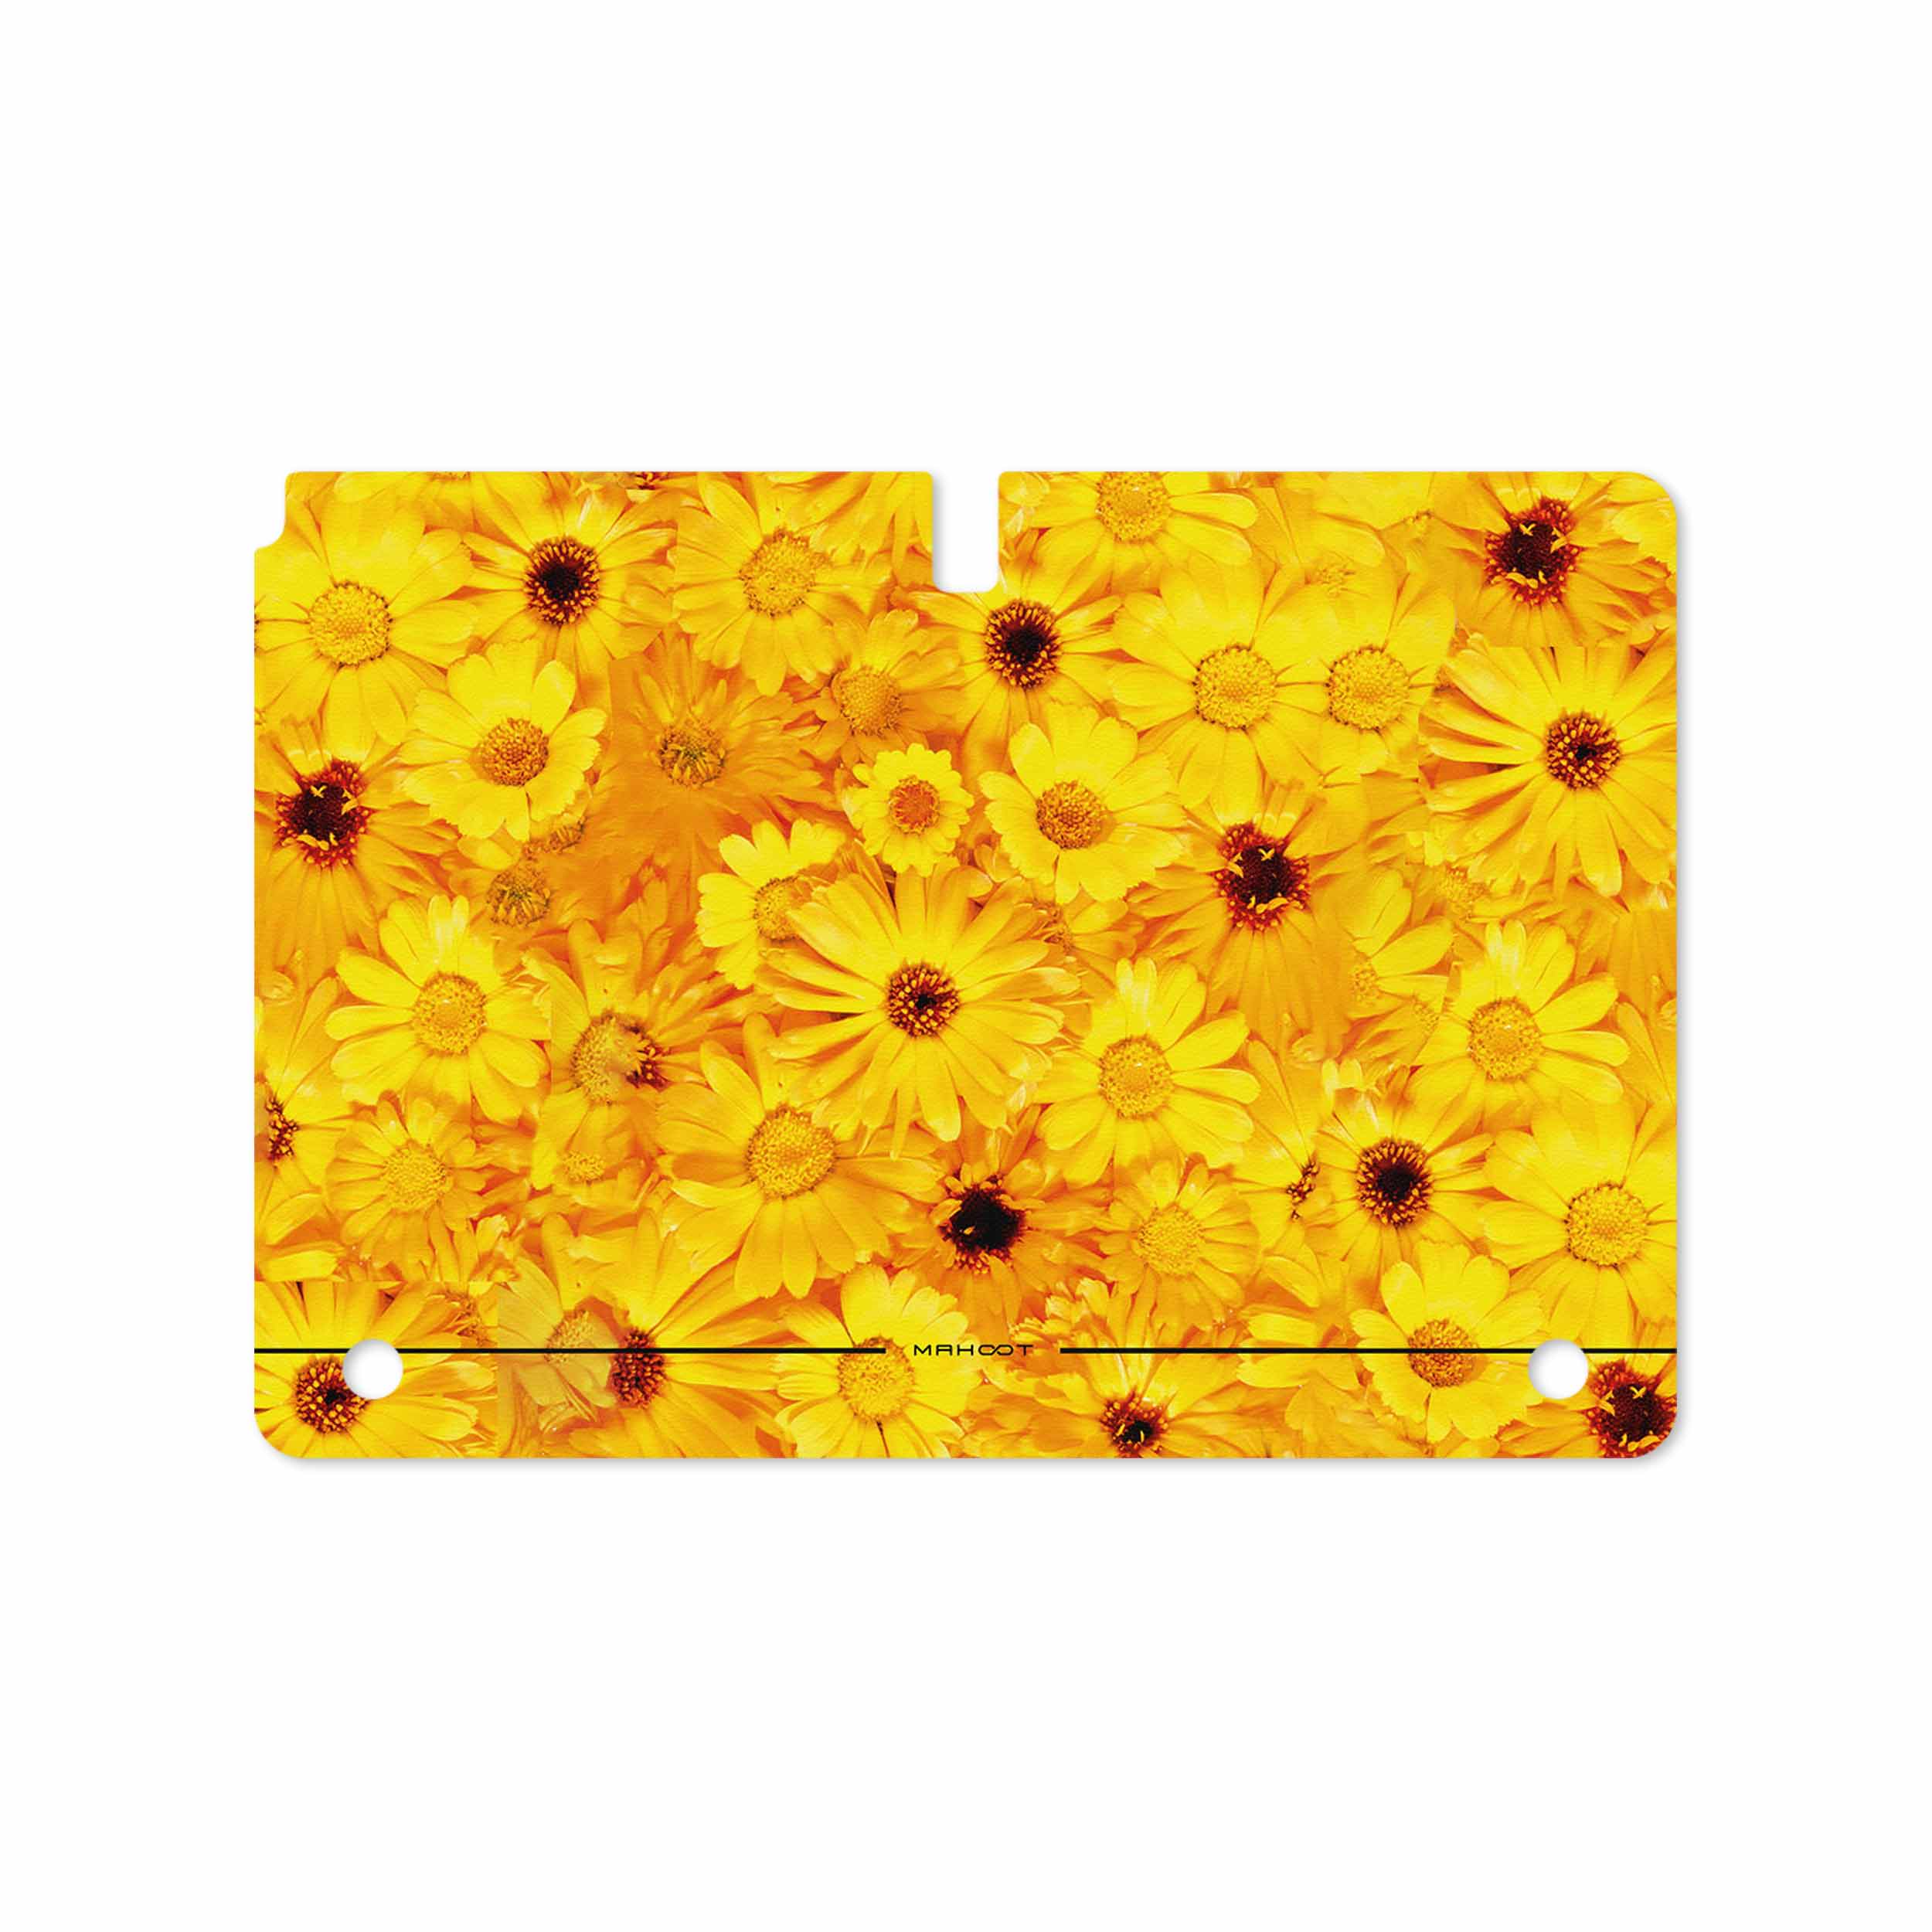 برچسب پوششی ماهوت مدل Yellow-Flower مناسب برای تبلت سامسونگ Galaxy Note 10.1 2012 N8010